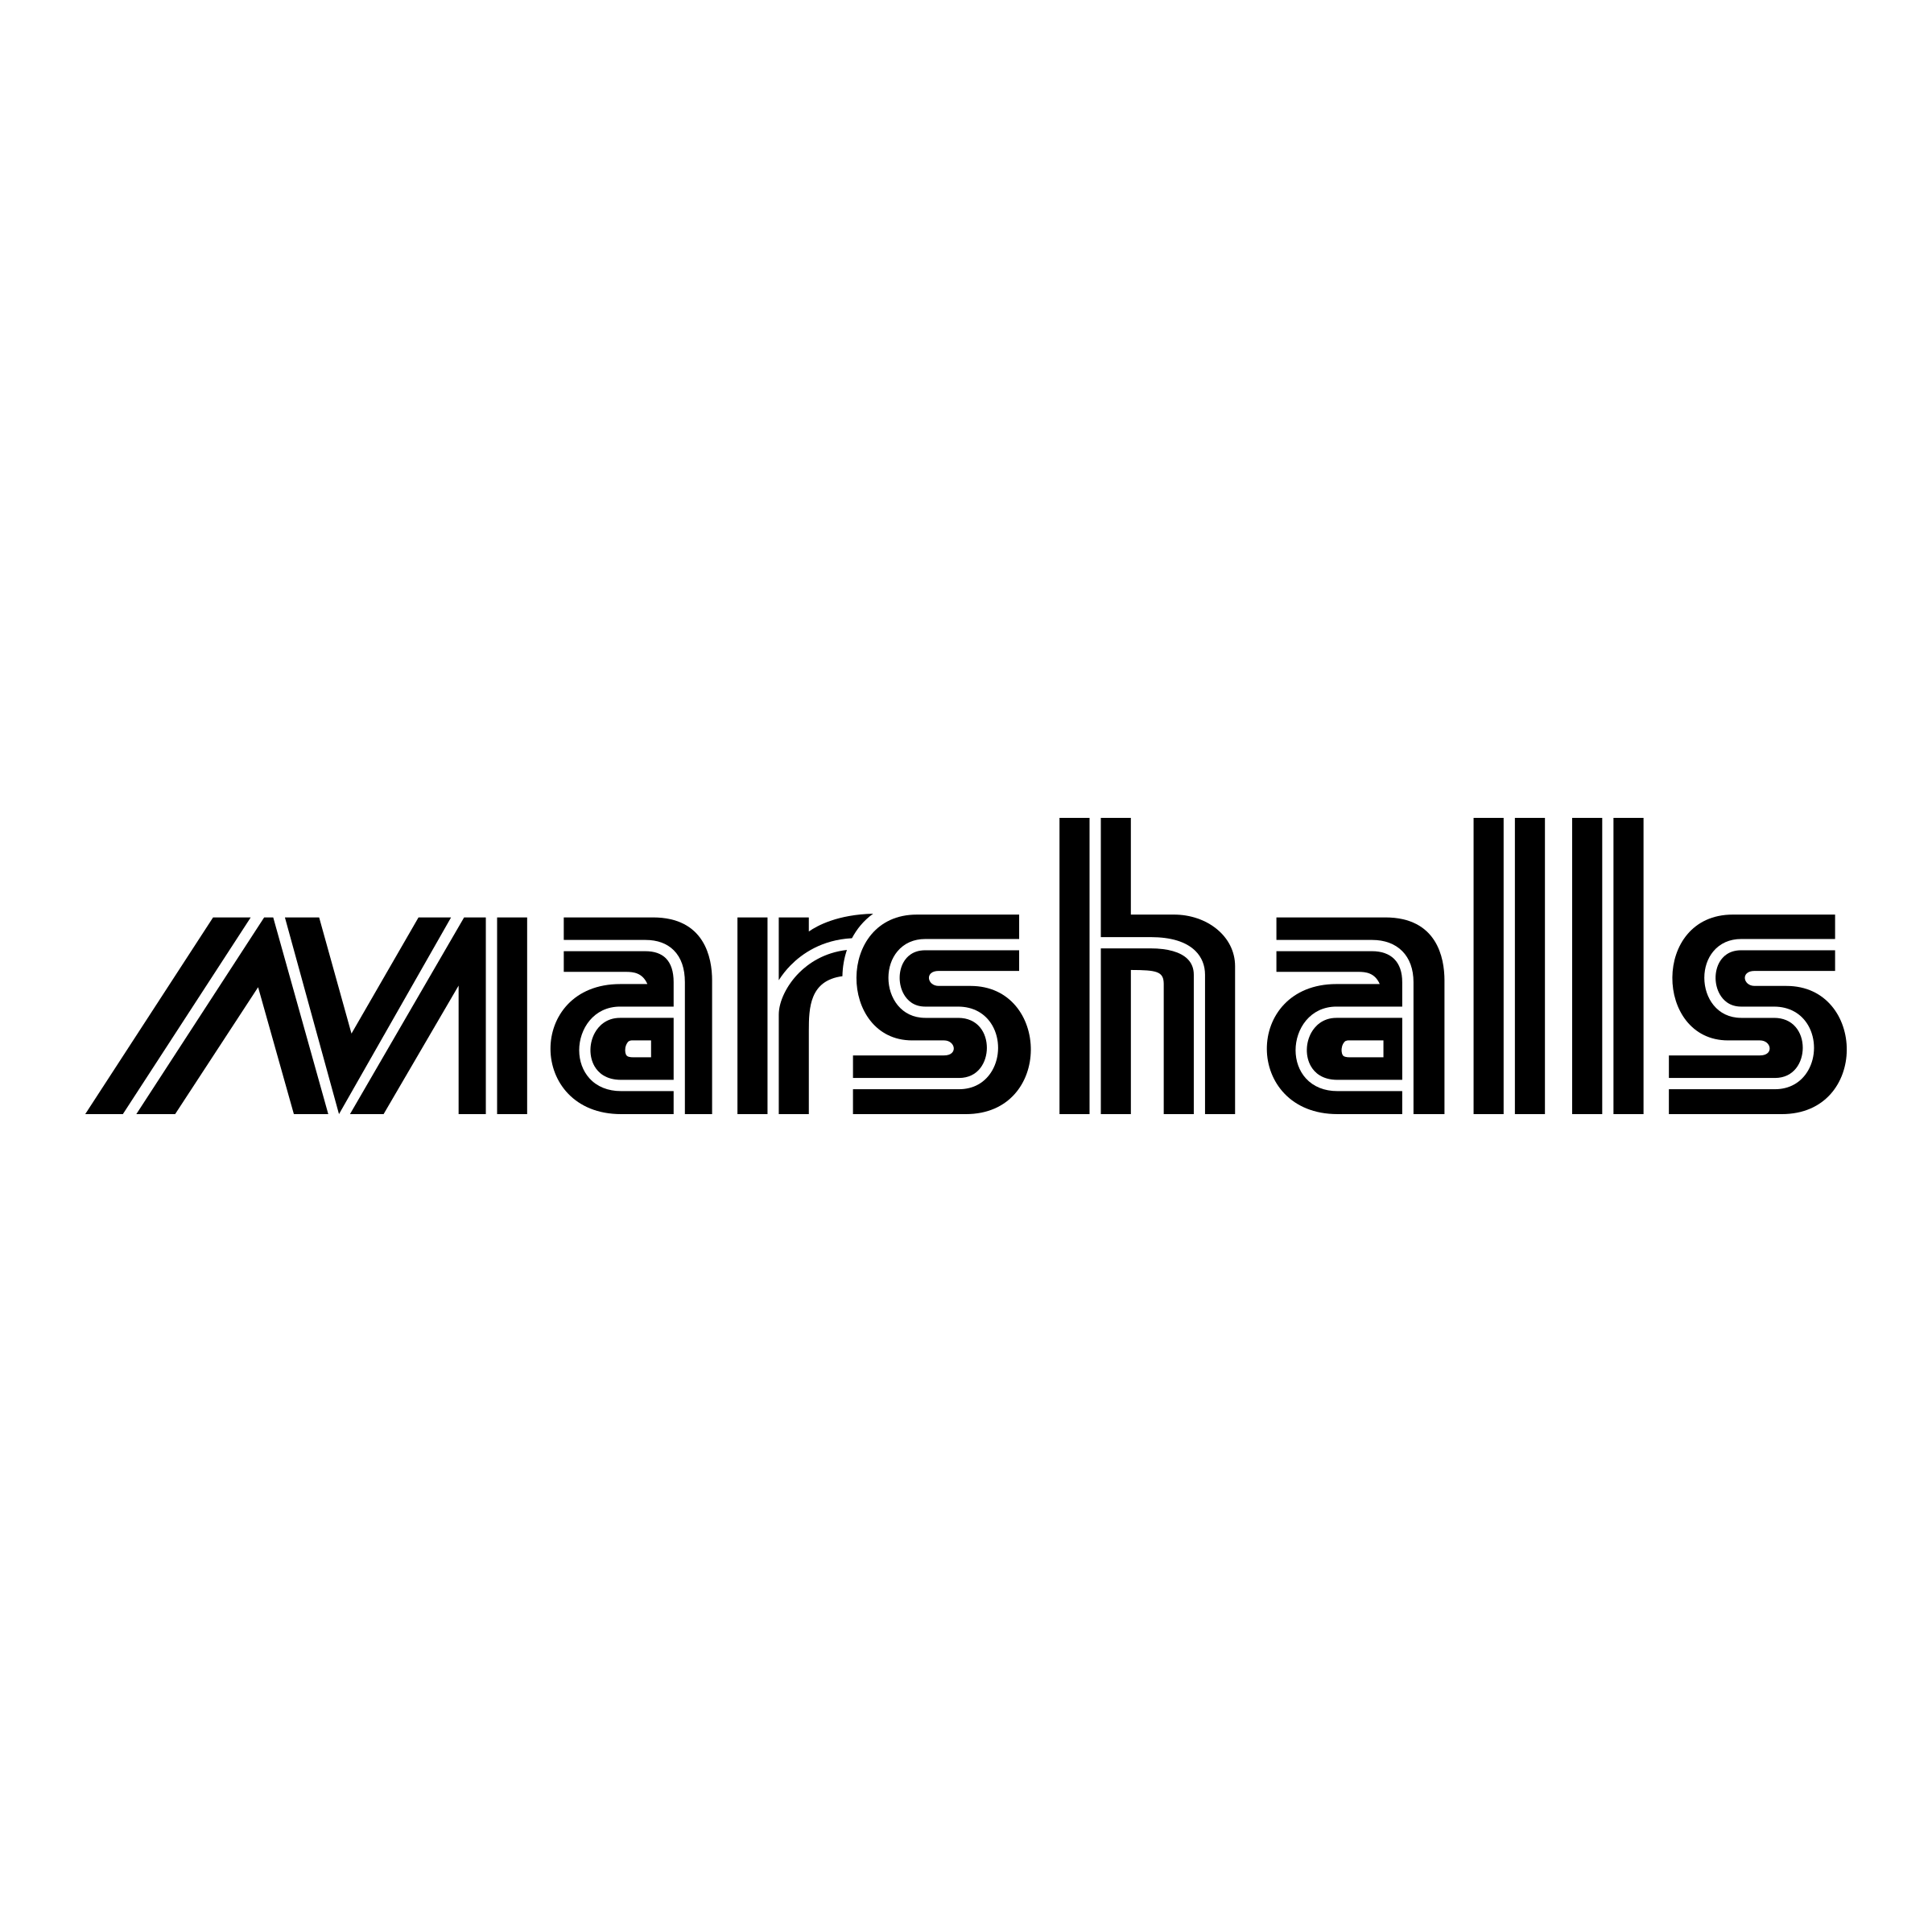 Marshalls Logo - Marshalls Logo PNG Transparent & SVG Vector - Freebie Supply